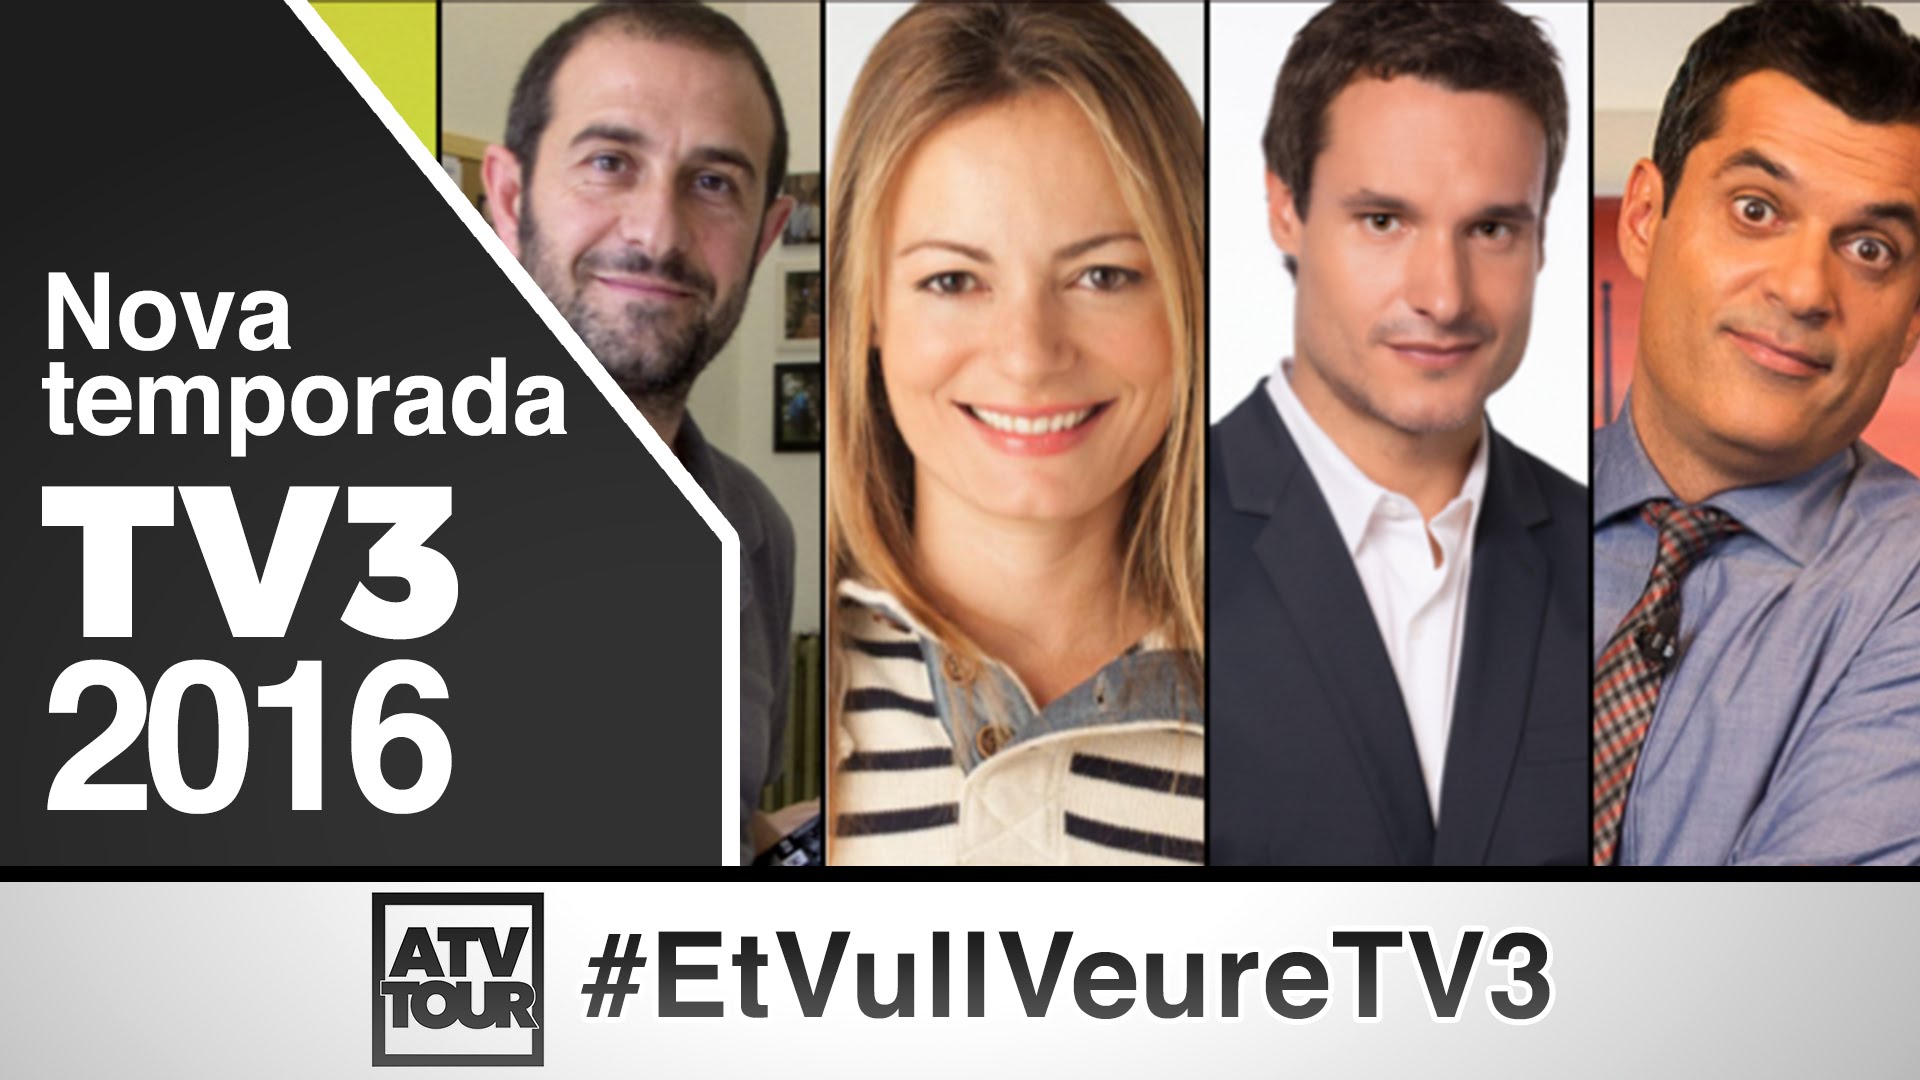 TV3 et vol veure a la nova temporada 2016-2017 de EdgarAstroCat